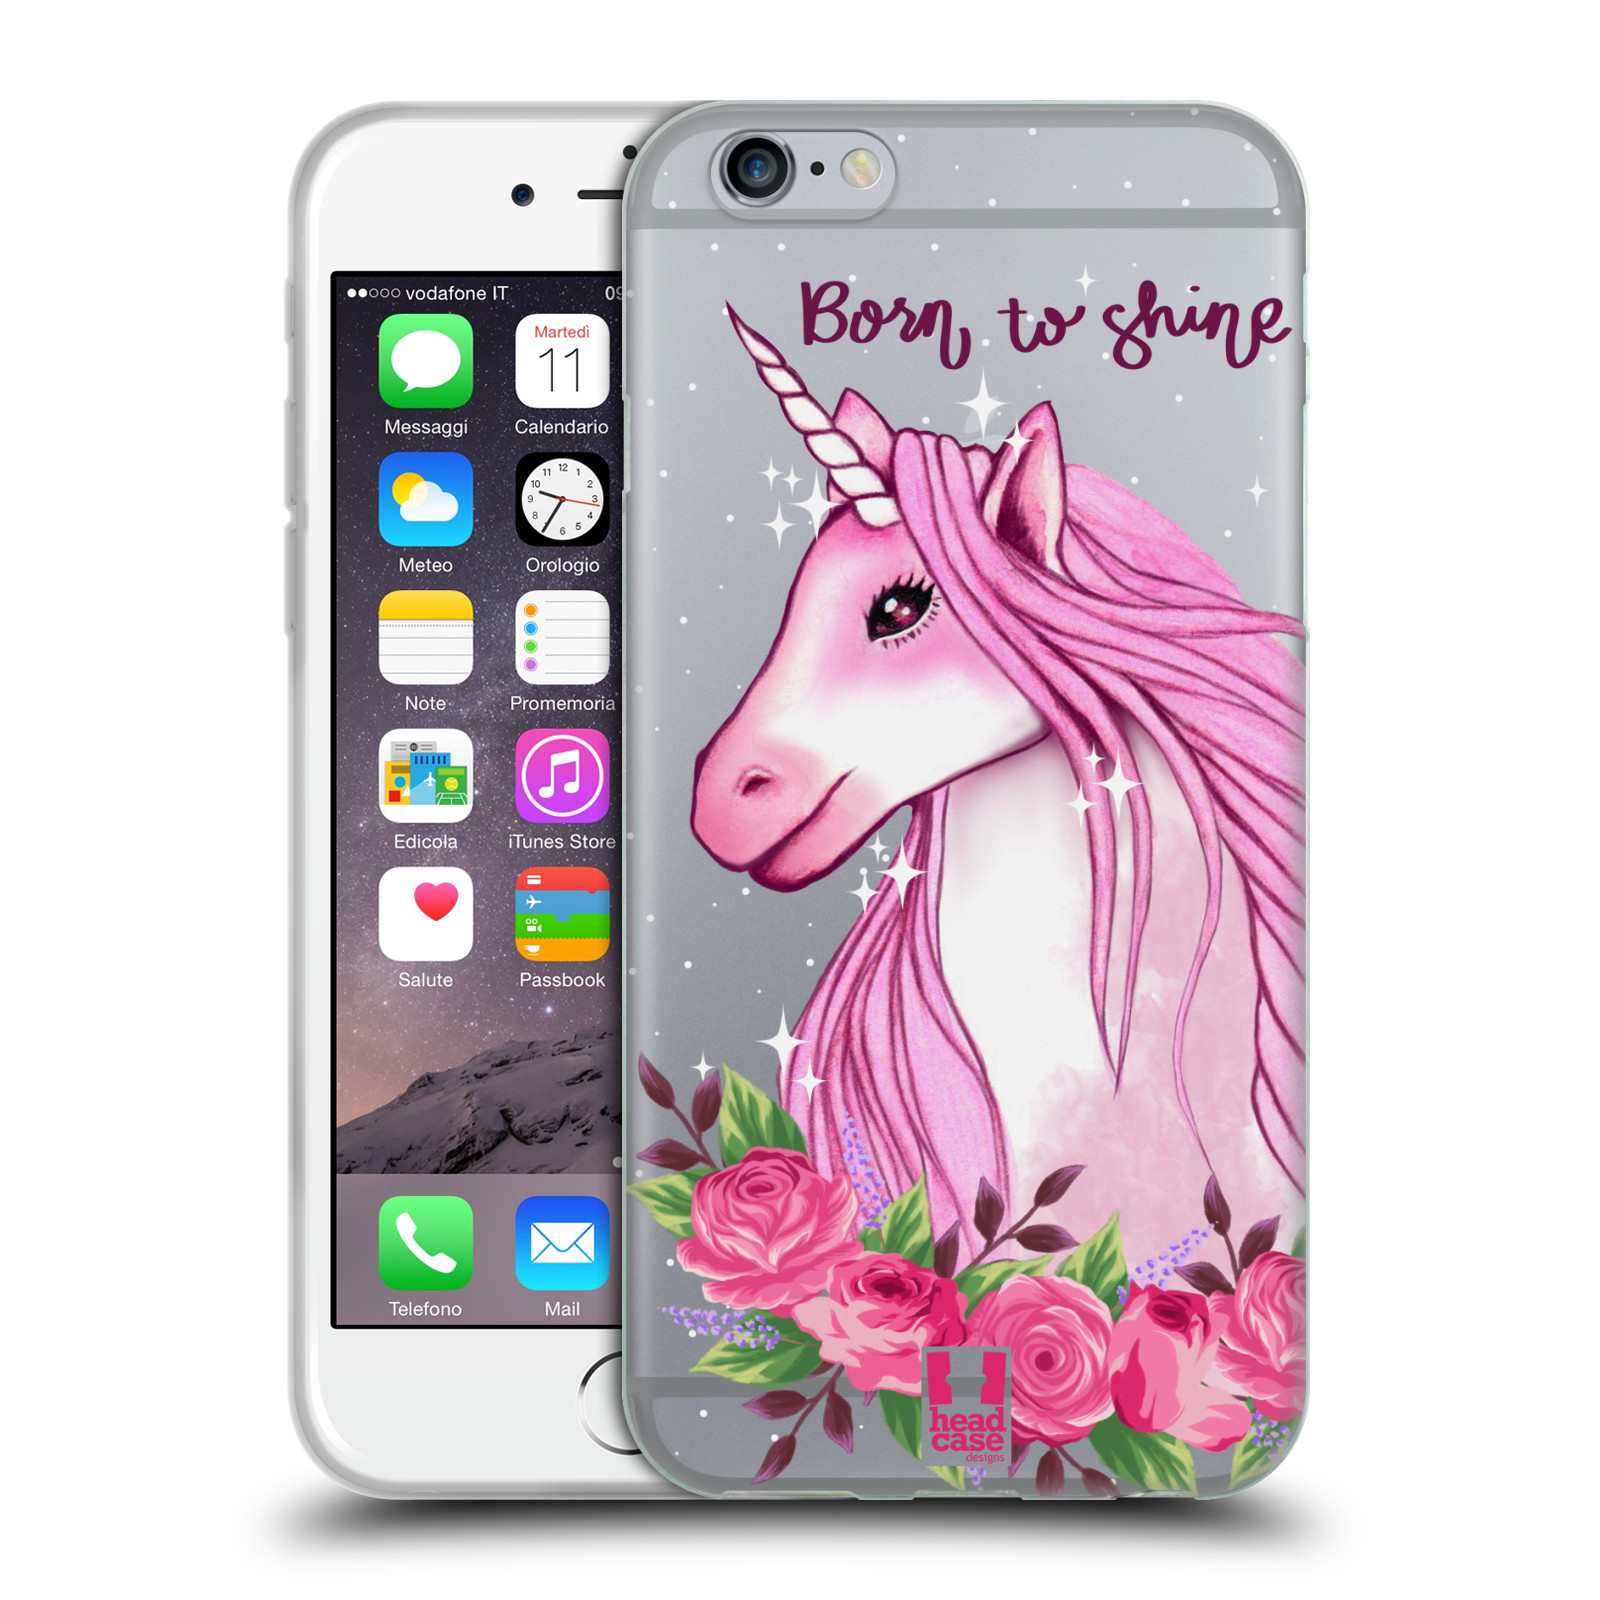 Silikonové pouzdro na mobil Apple iPhone 6 - Head Case - Jednorožec - Born to shine (Silikonový kryt či obal na mobilní telefon s motivem jednorožce (unicorn) pro Apple iPhone 6)